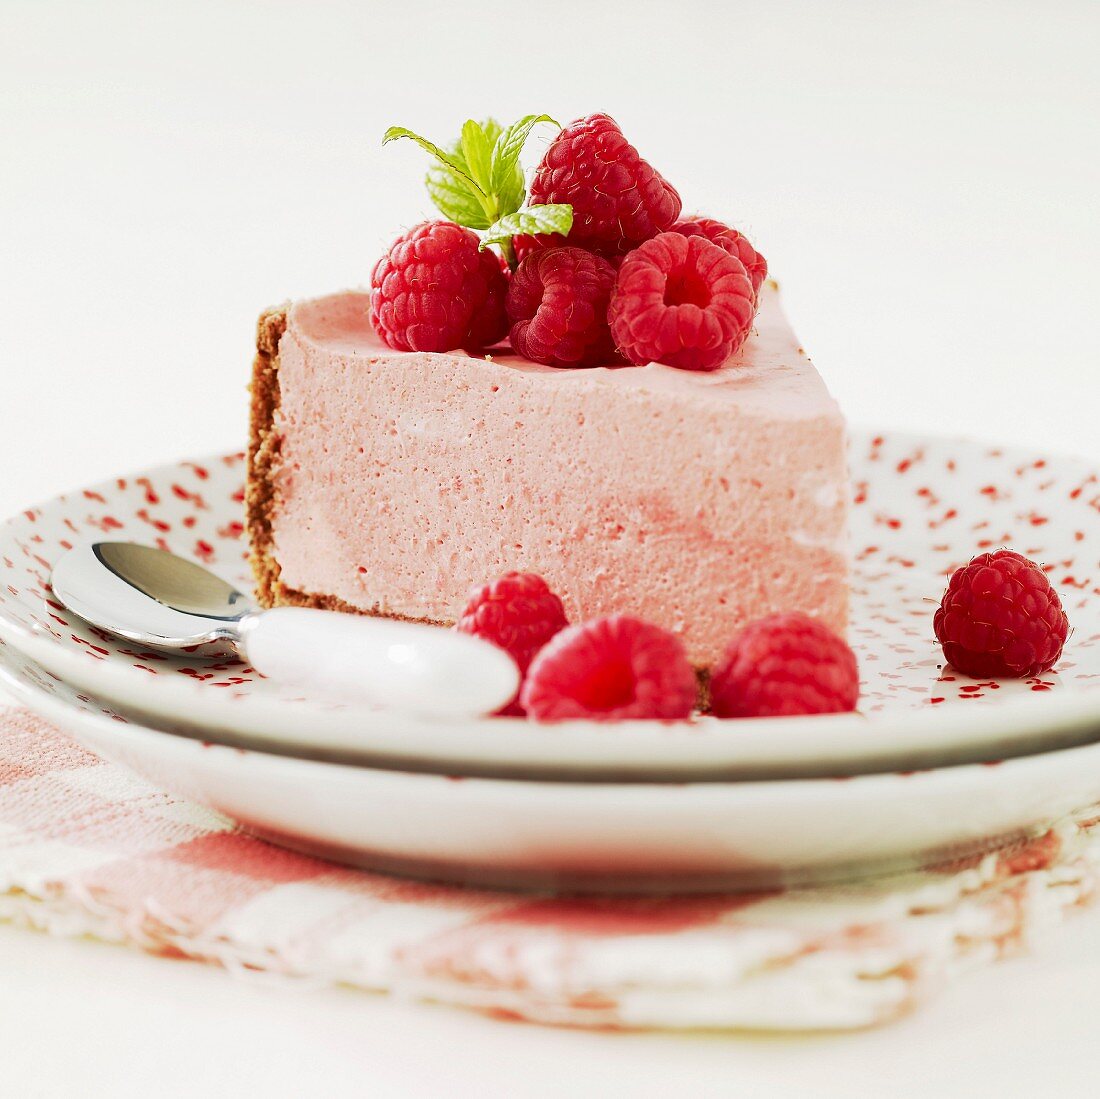 White chocolate and raspberry cheesecake